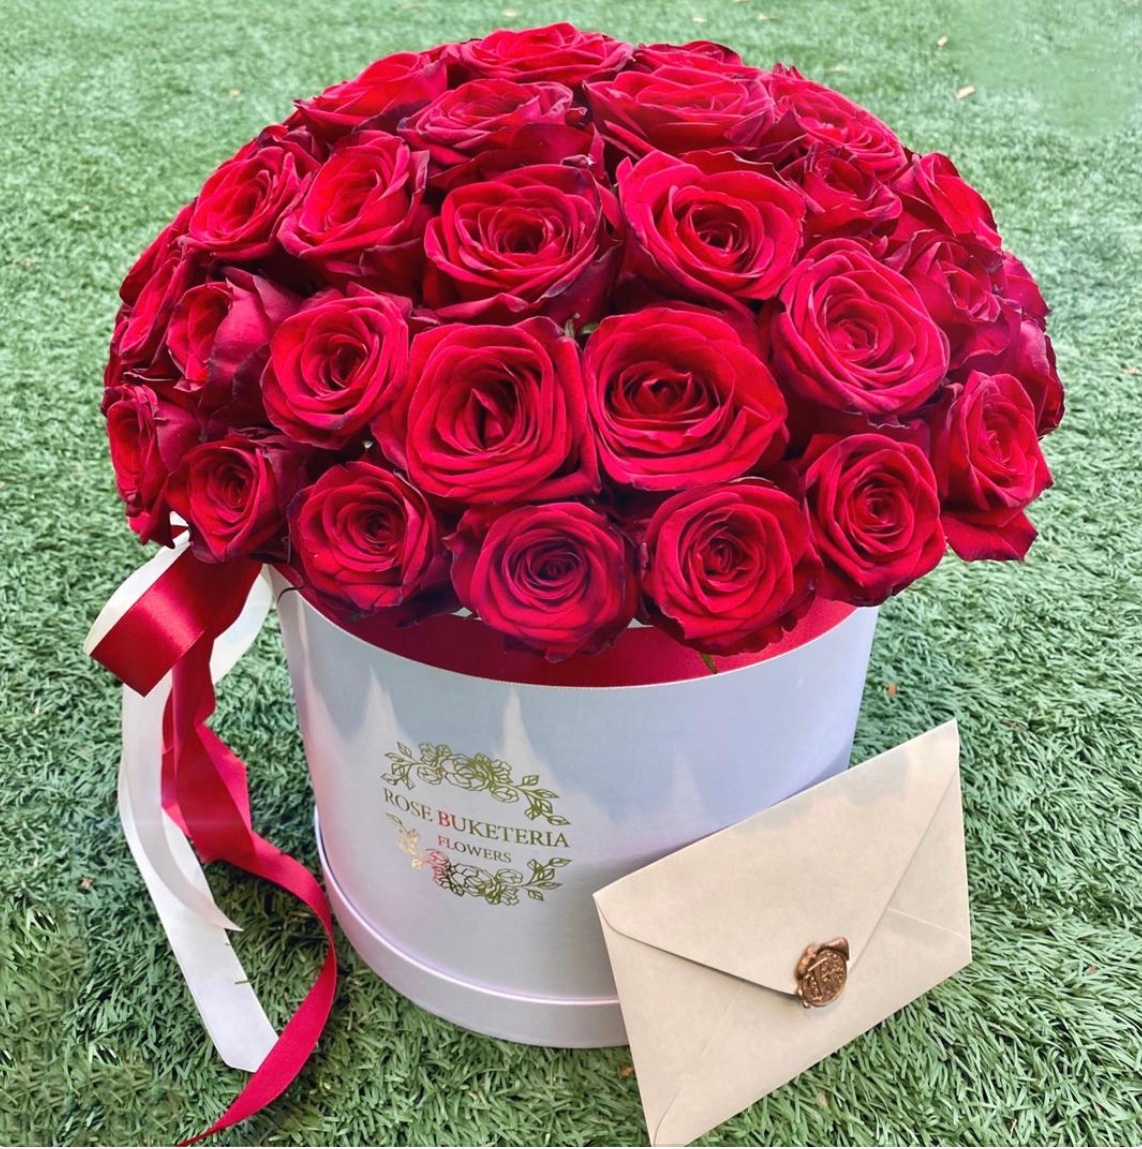 59 Красных роз в шляпной коробке М «Гармония чувств»